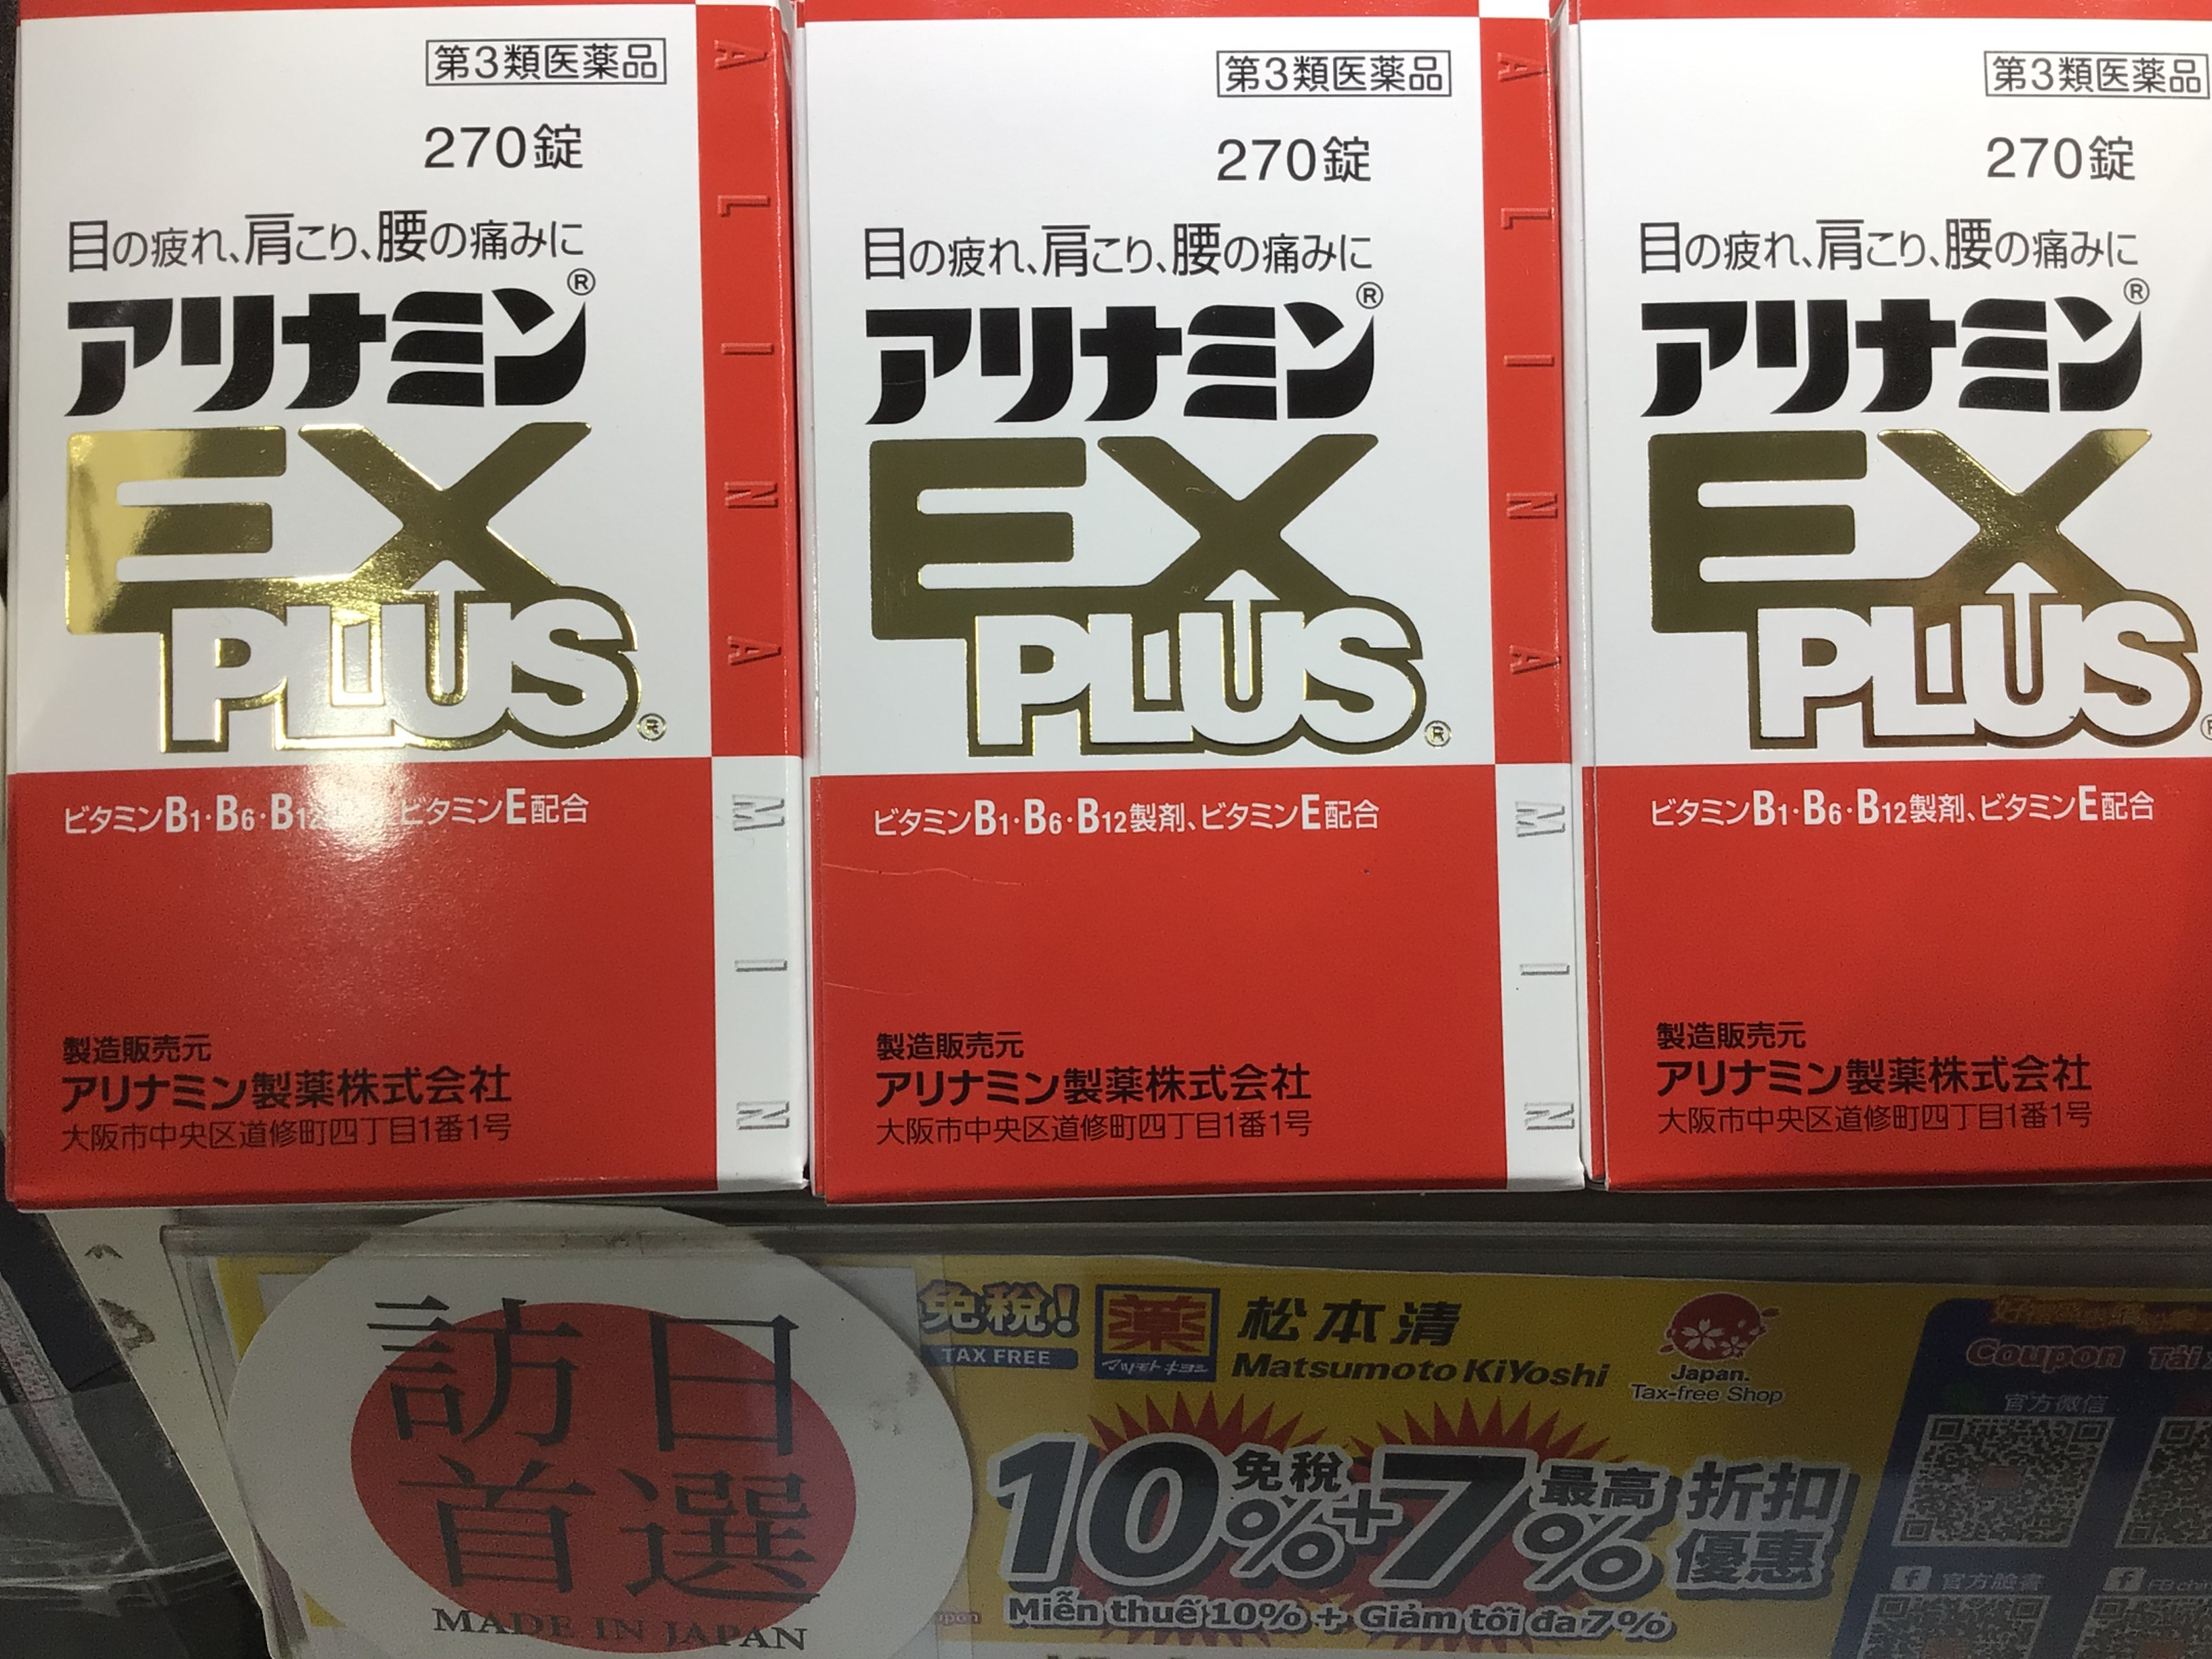 Photo of MatsumotoKiyoshi's recommended product